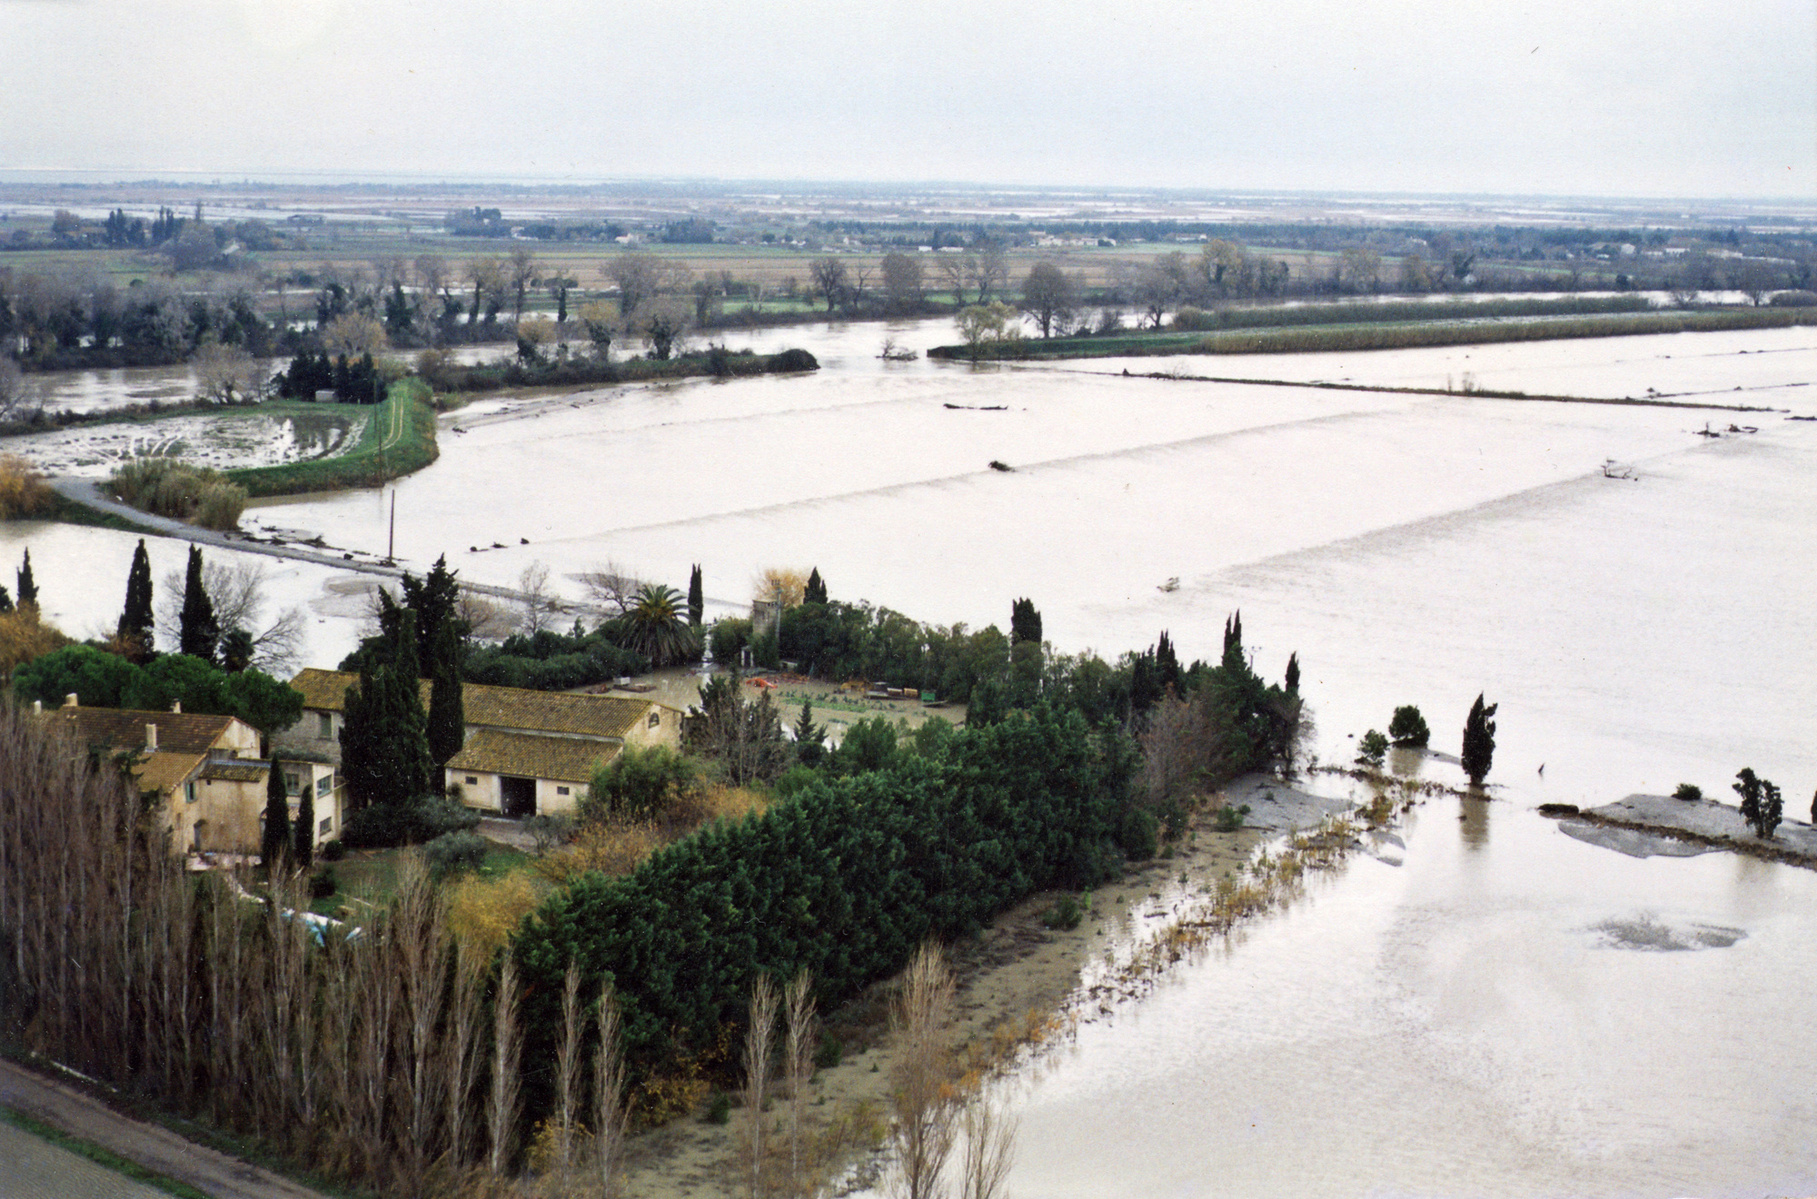 Inondation 2003 Saint-Gilles, Photographie d’archive de Mr Barbier